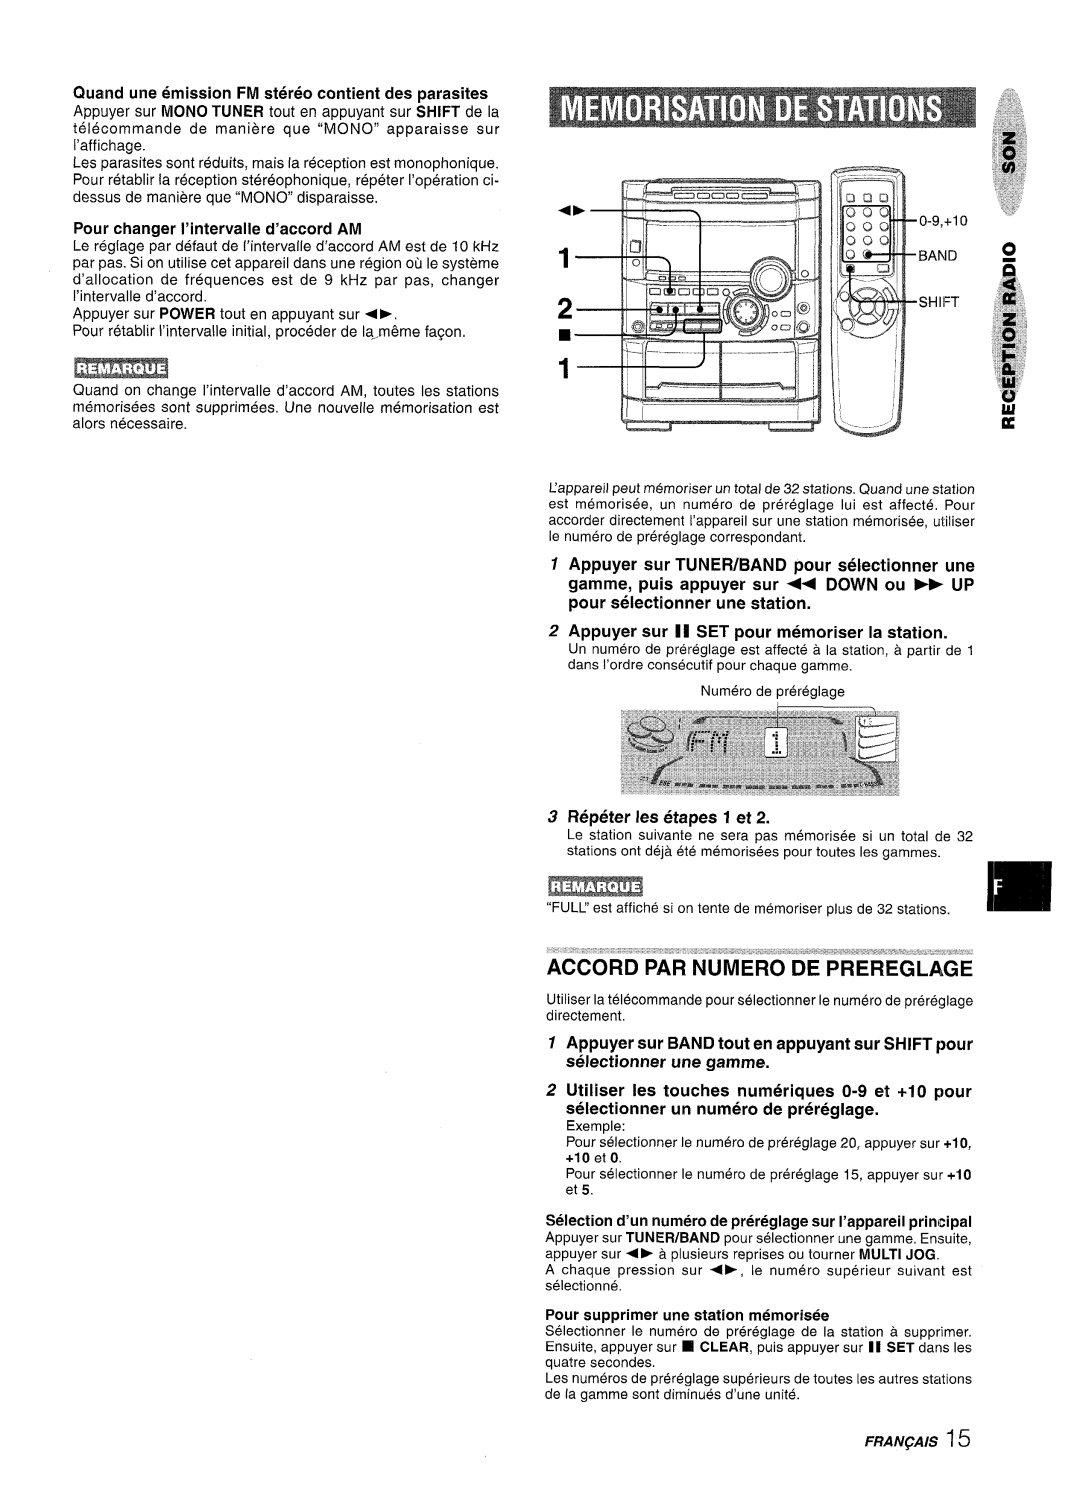 Sony NSX-A767 manual Quand une emission FM stereo contient des parasites, Appuyer sur POWER tout en appuyant sur + 